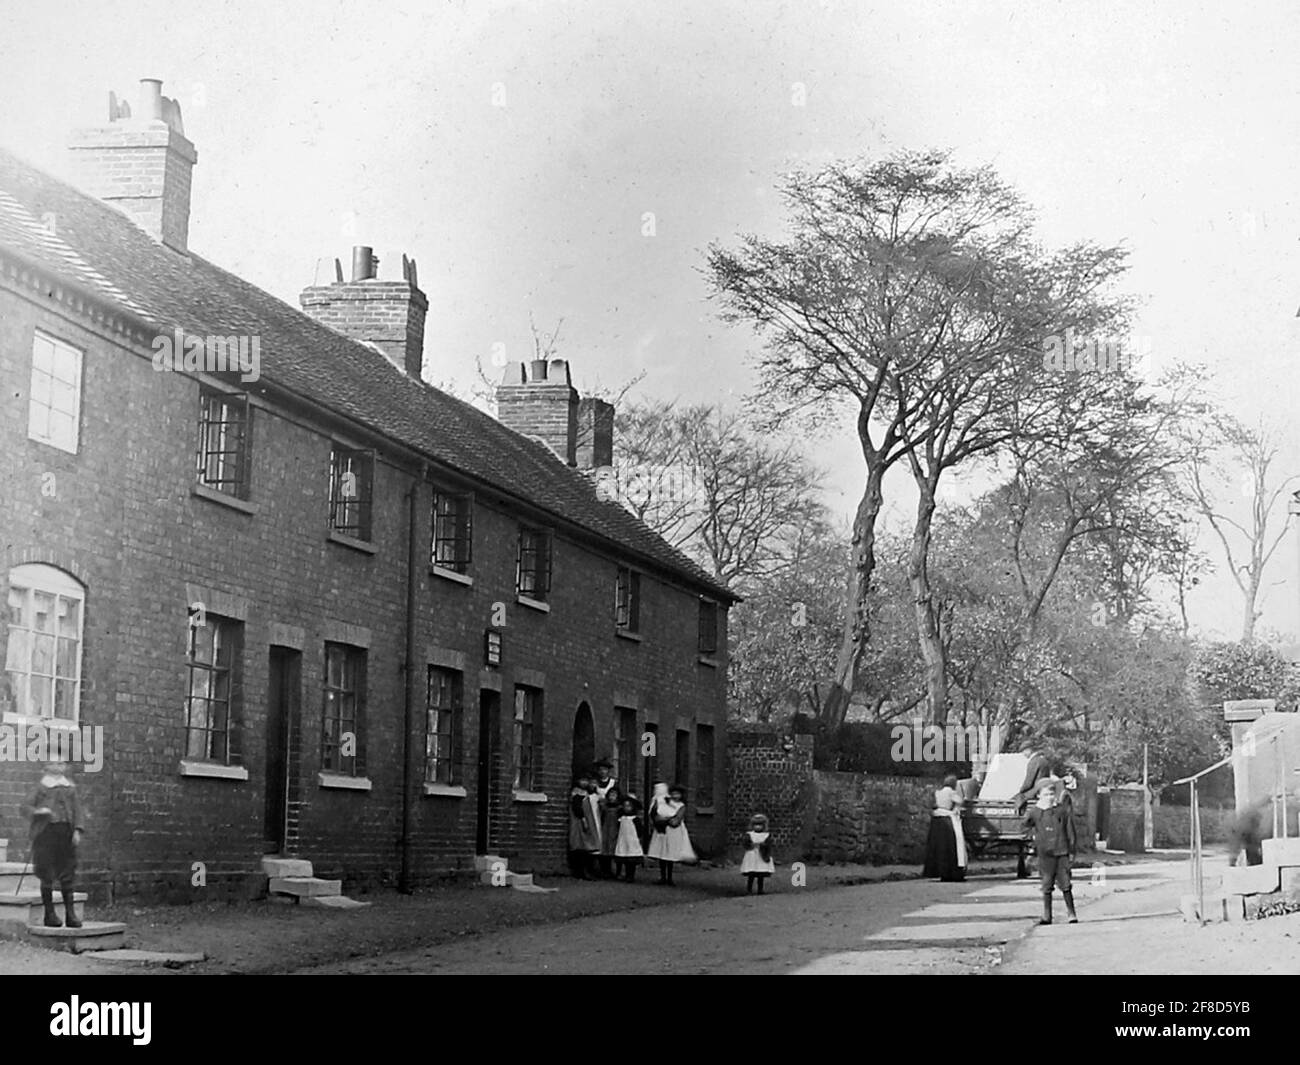 Great Haywood, Staffordshire, début des années 1900 Banque D'Images